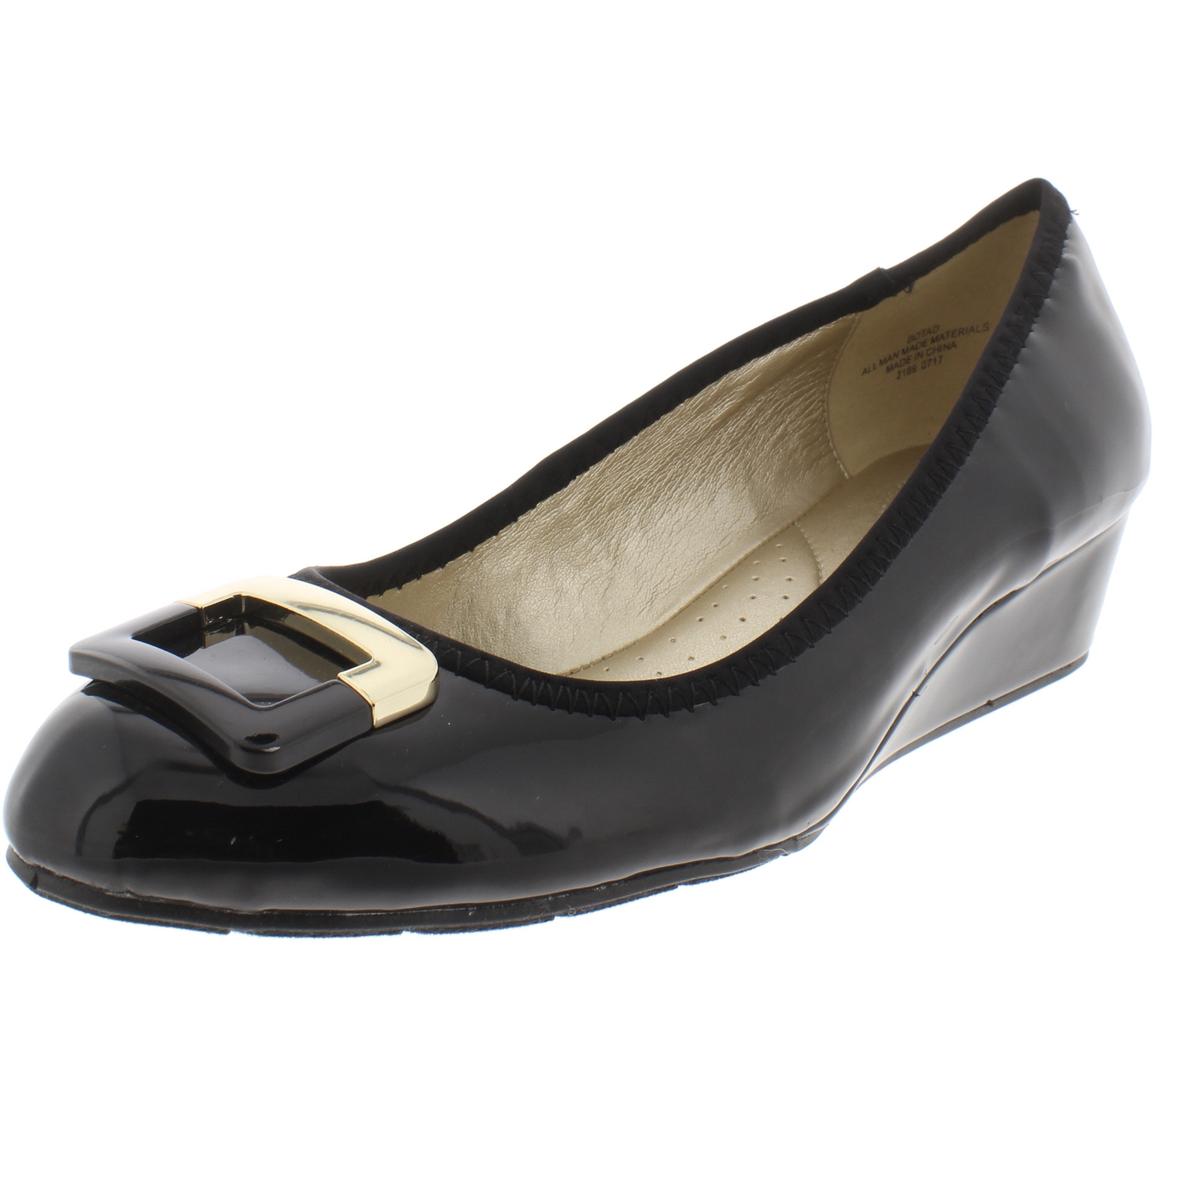 Bandolino Womens Tad Black Patent Wedge Heels Shoes 6.5 Medium (B,M ...